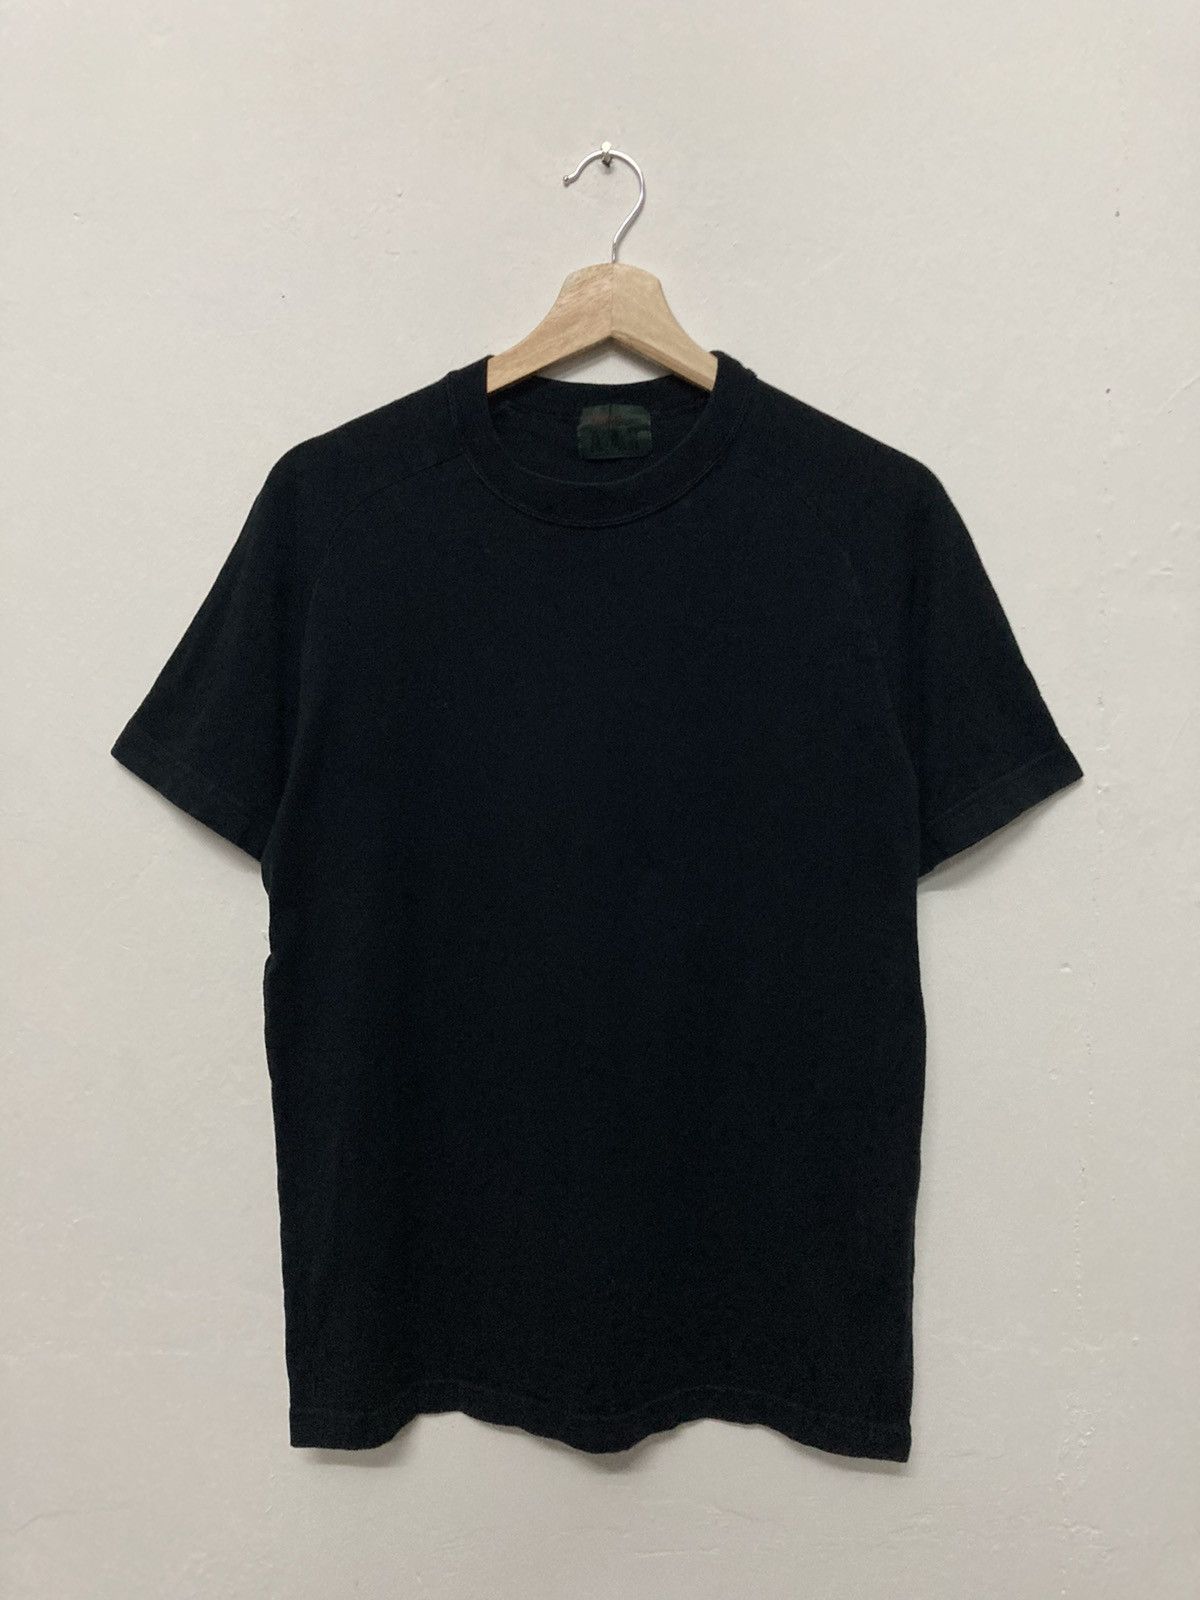 A.A.R Yohji Yamamoto x Durban Black Plain Shirt - 1